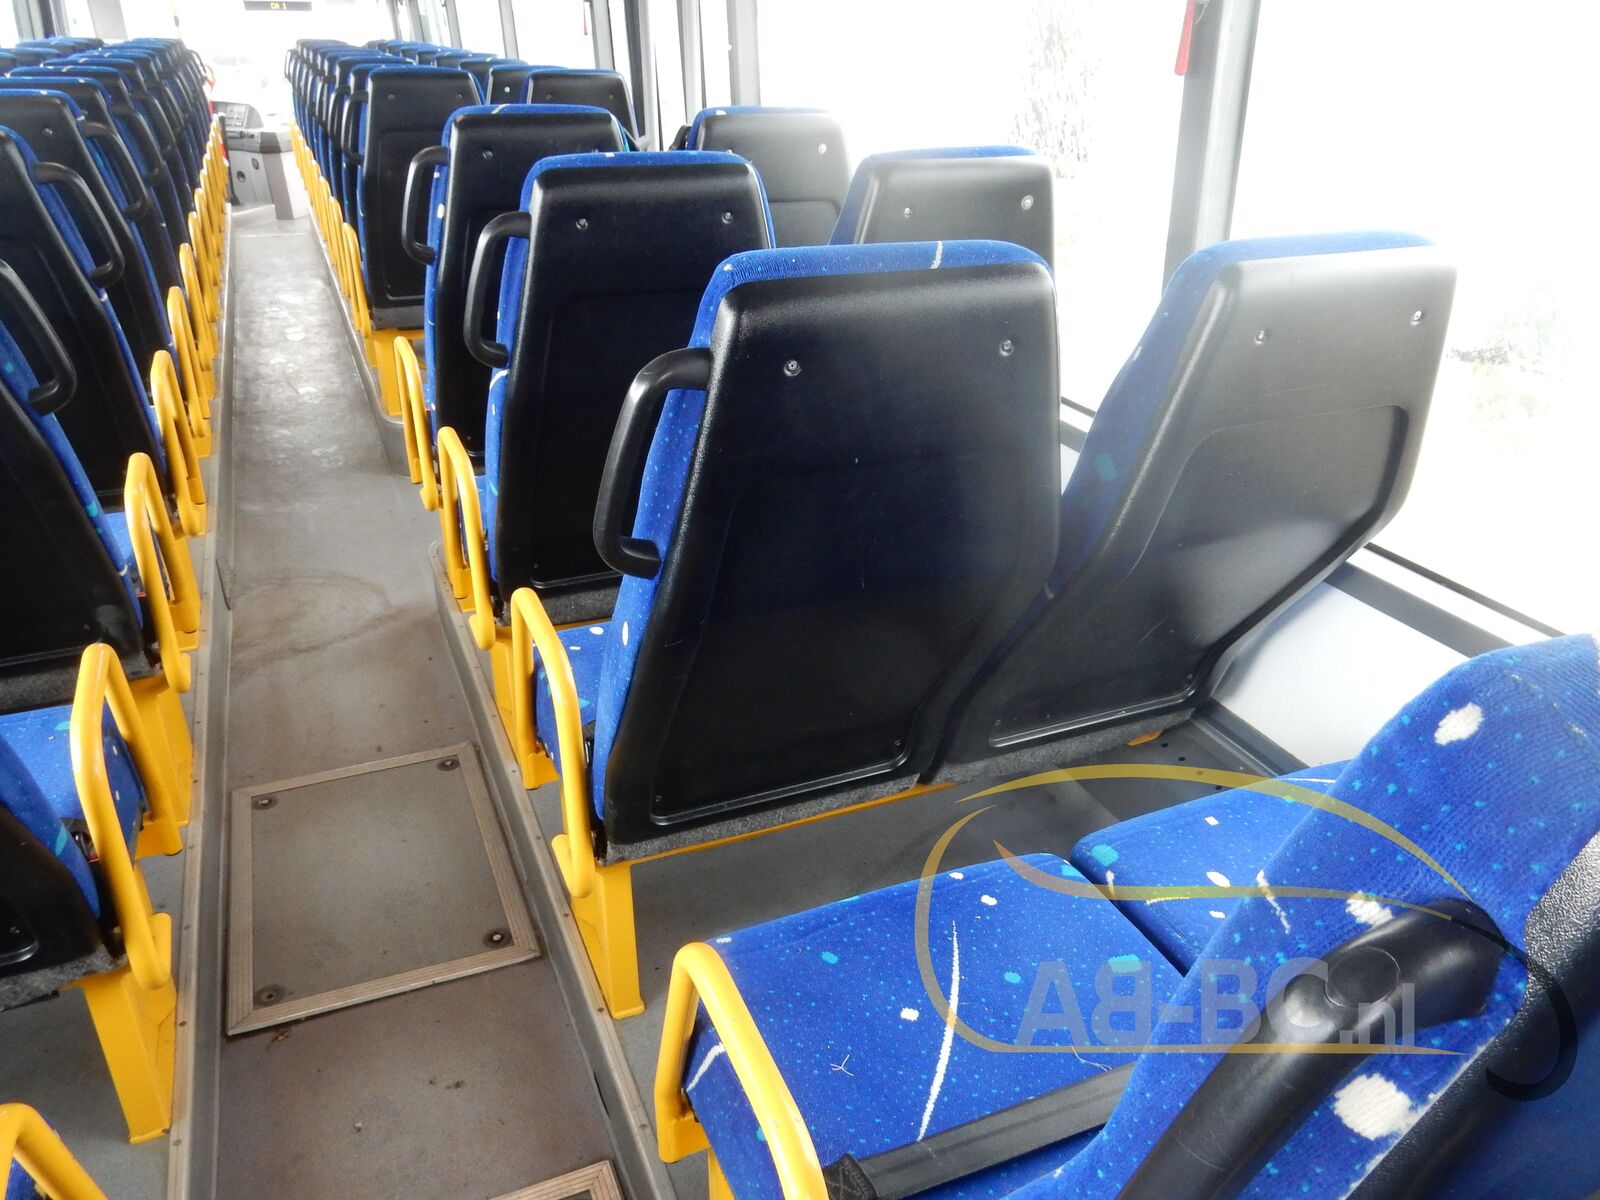 interurban-bus-IVECO-Irisbus-Recreo-64-Seats---1634818700102443658_orig_aca4a5a7336a33b12a75c43cc22eca9b--21102115152205689900